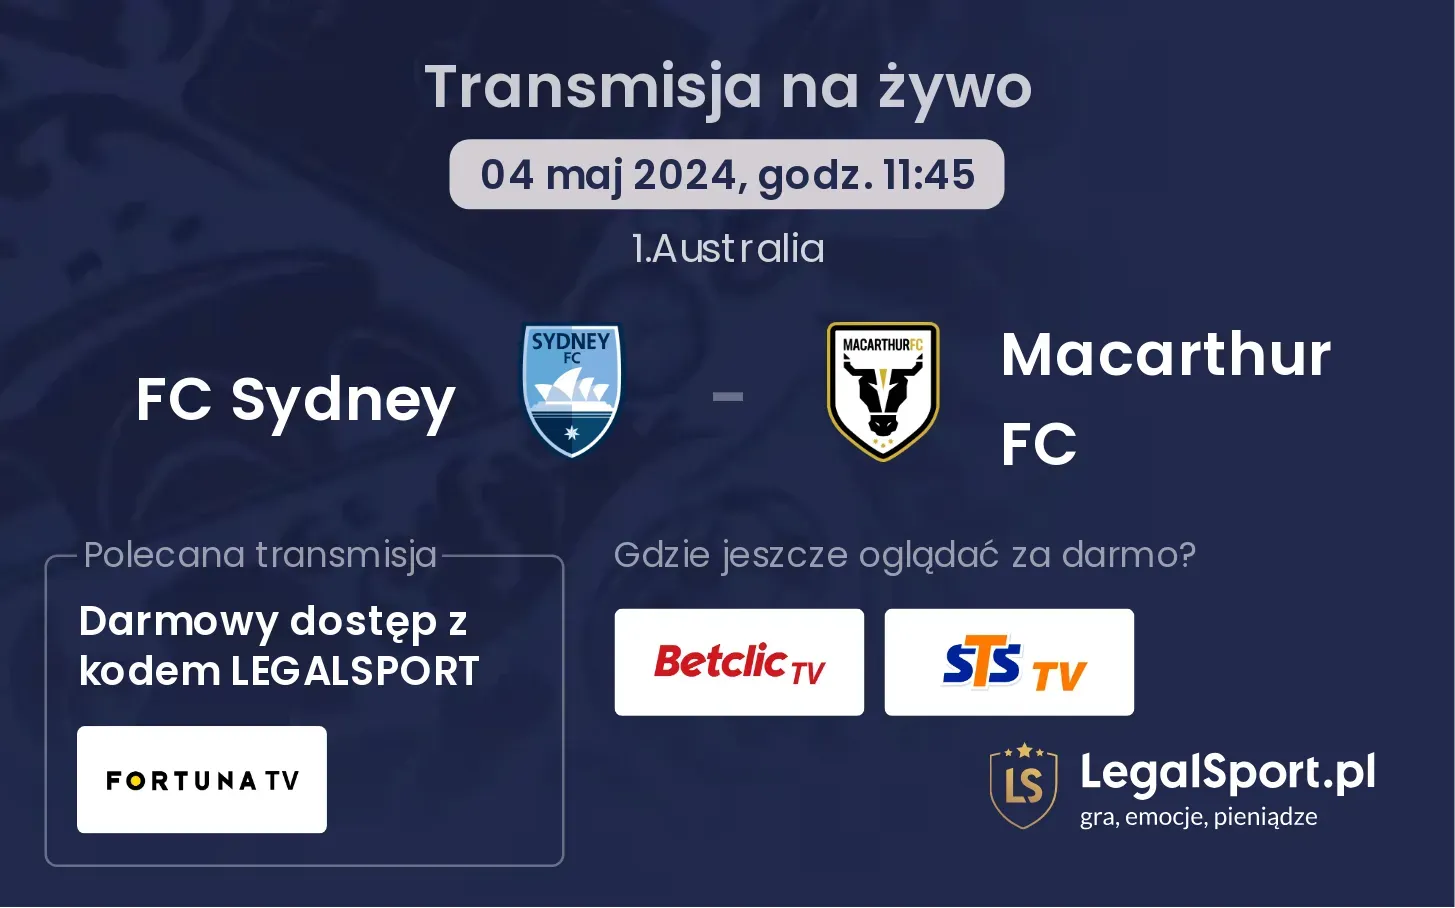 FC Sydney - Macarthur FC transmisja na żywo